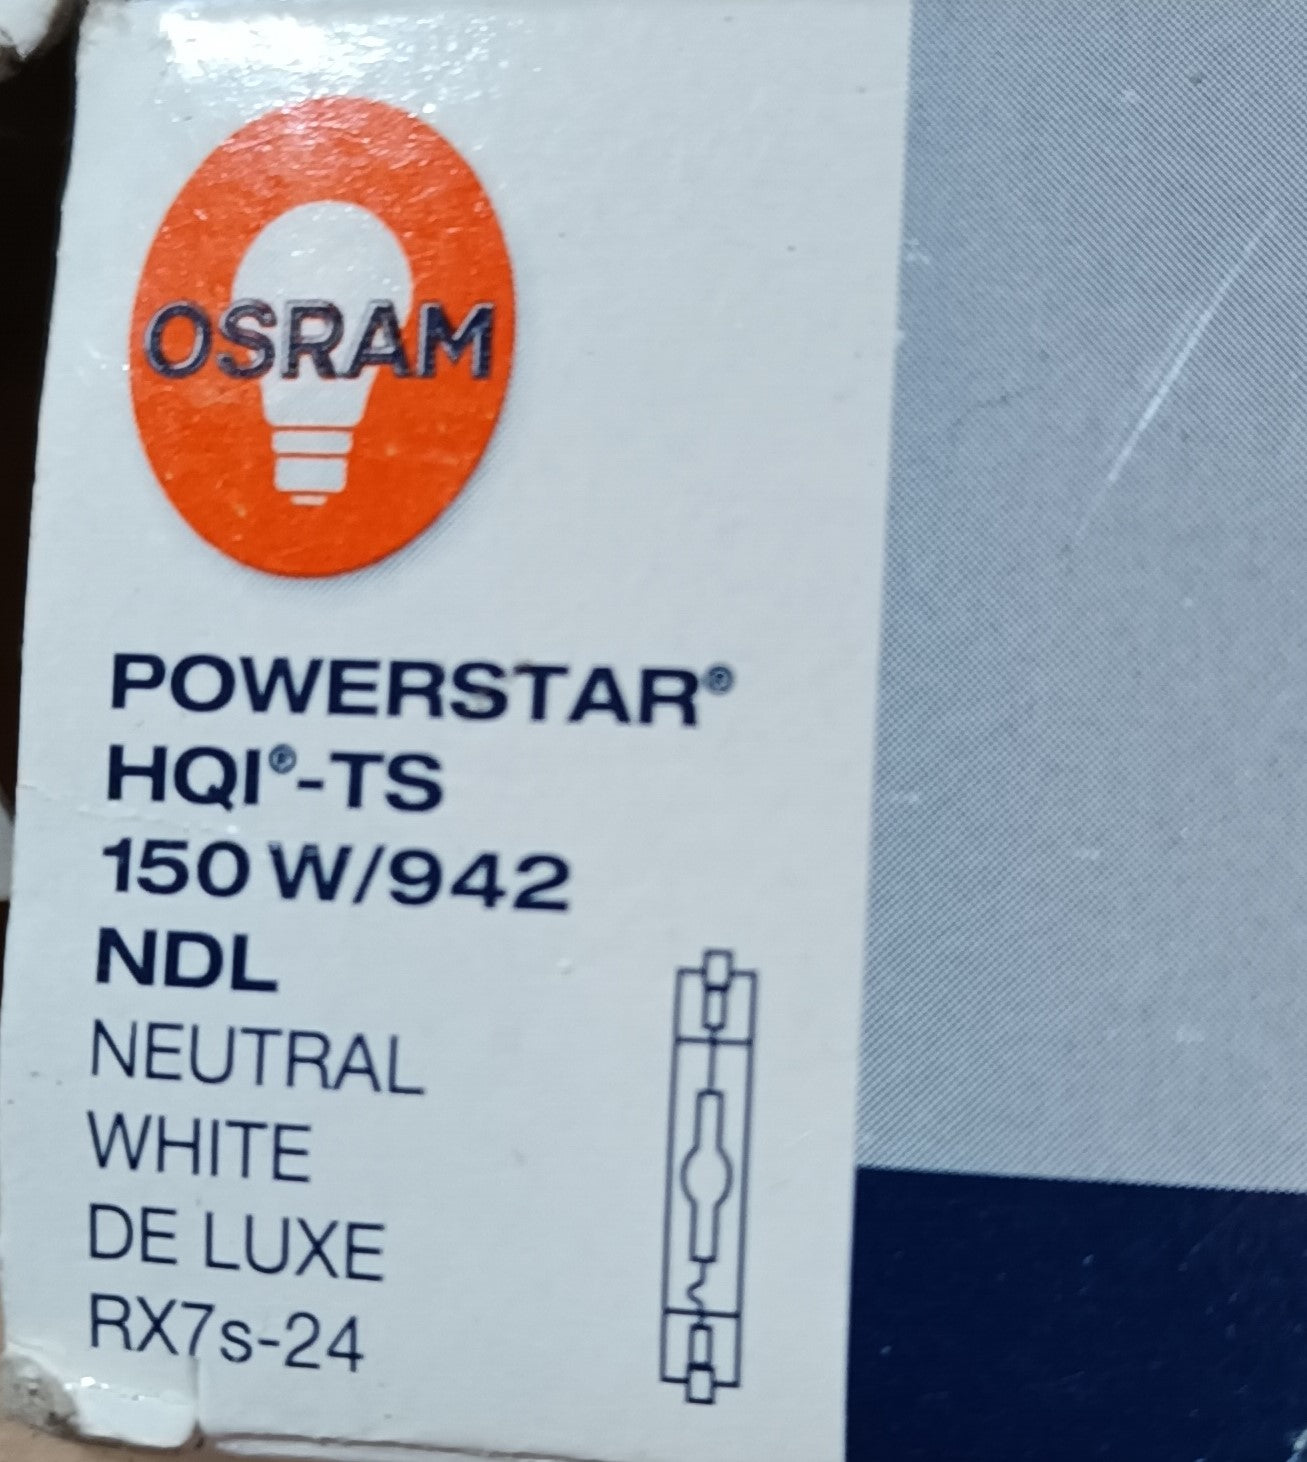 Powerstar 150watts HQI-TS NDL RX7s-24 NDL 942 / cool white by Osram